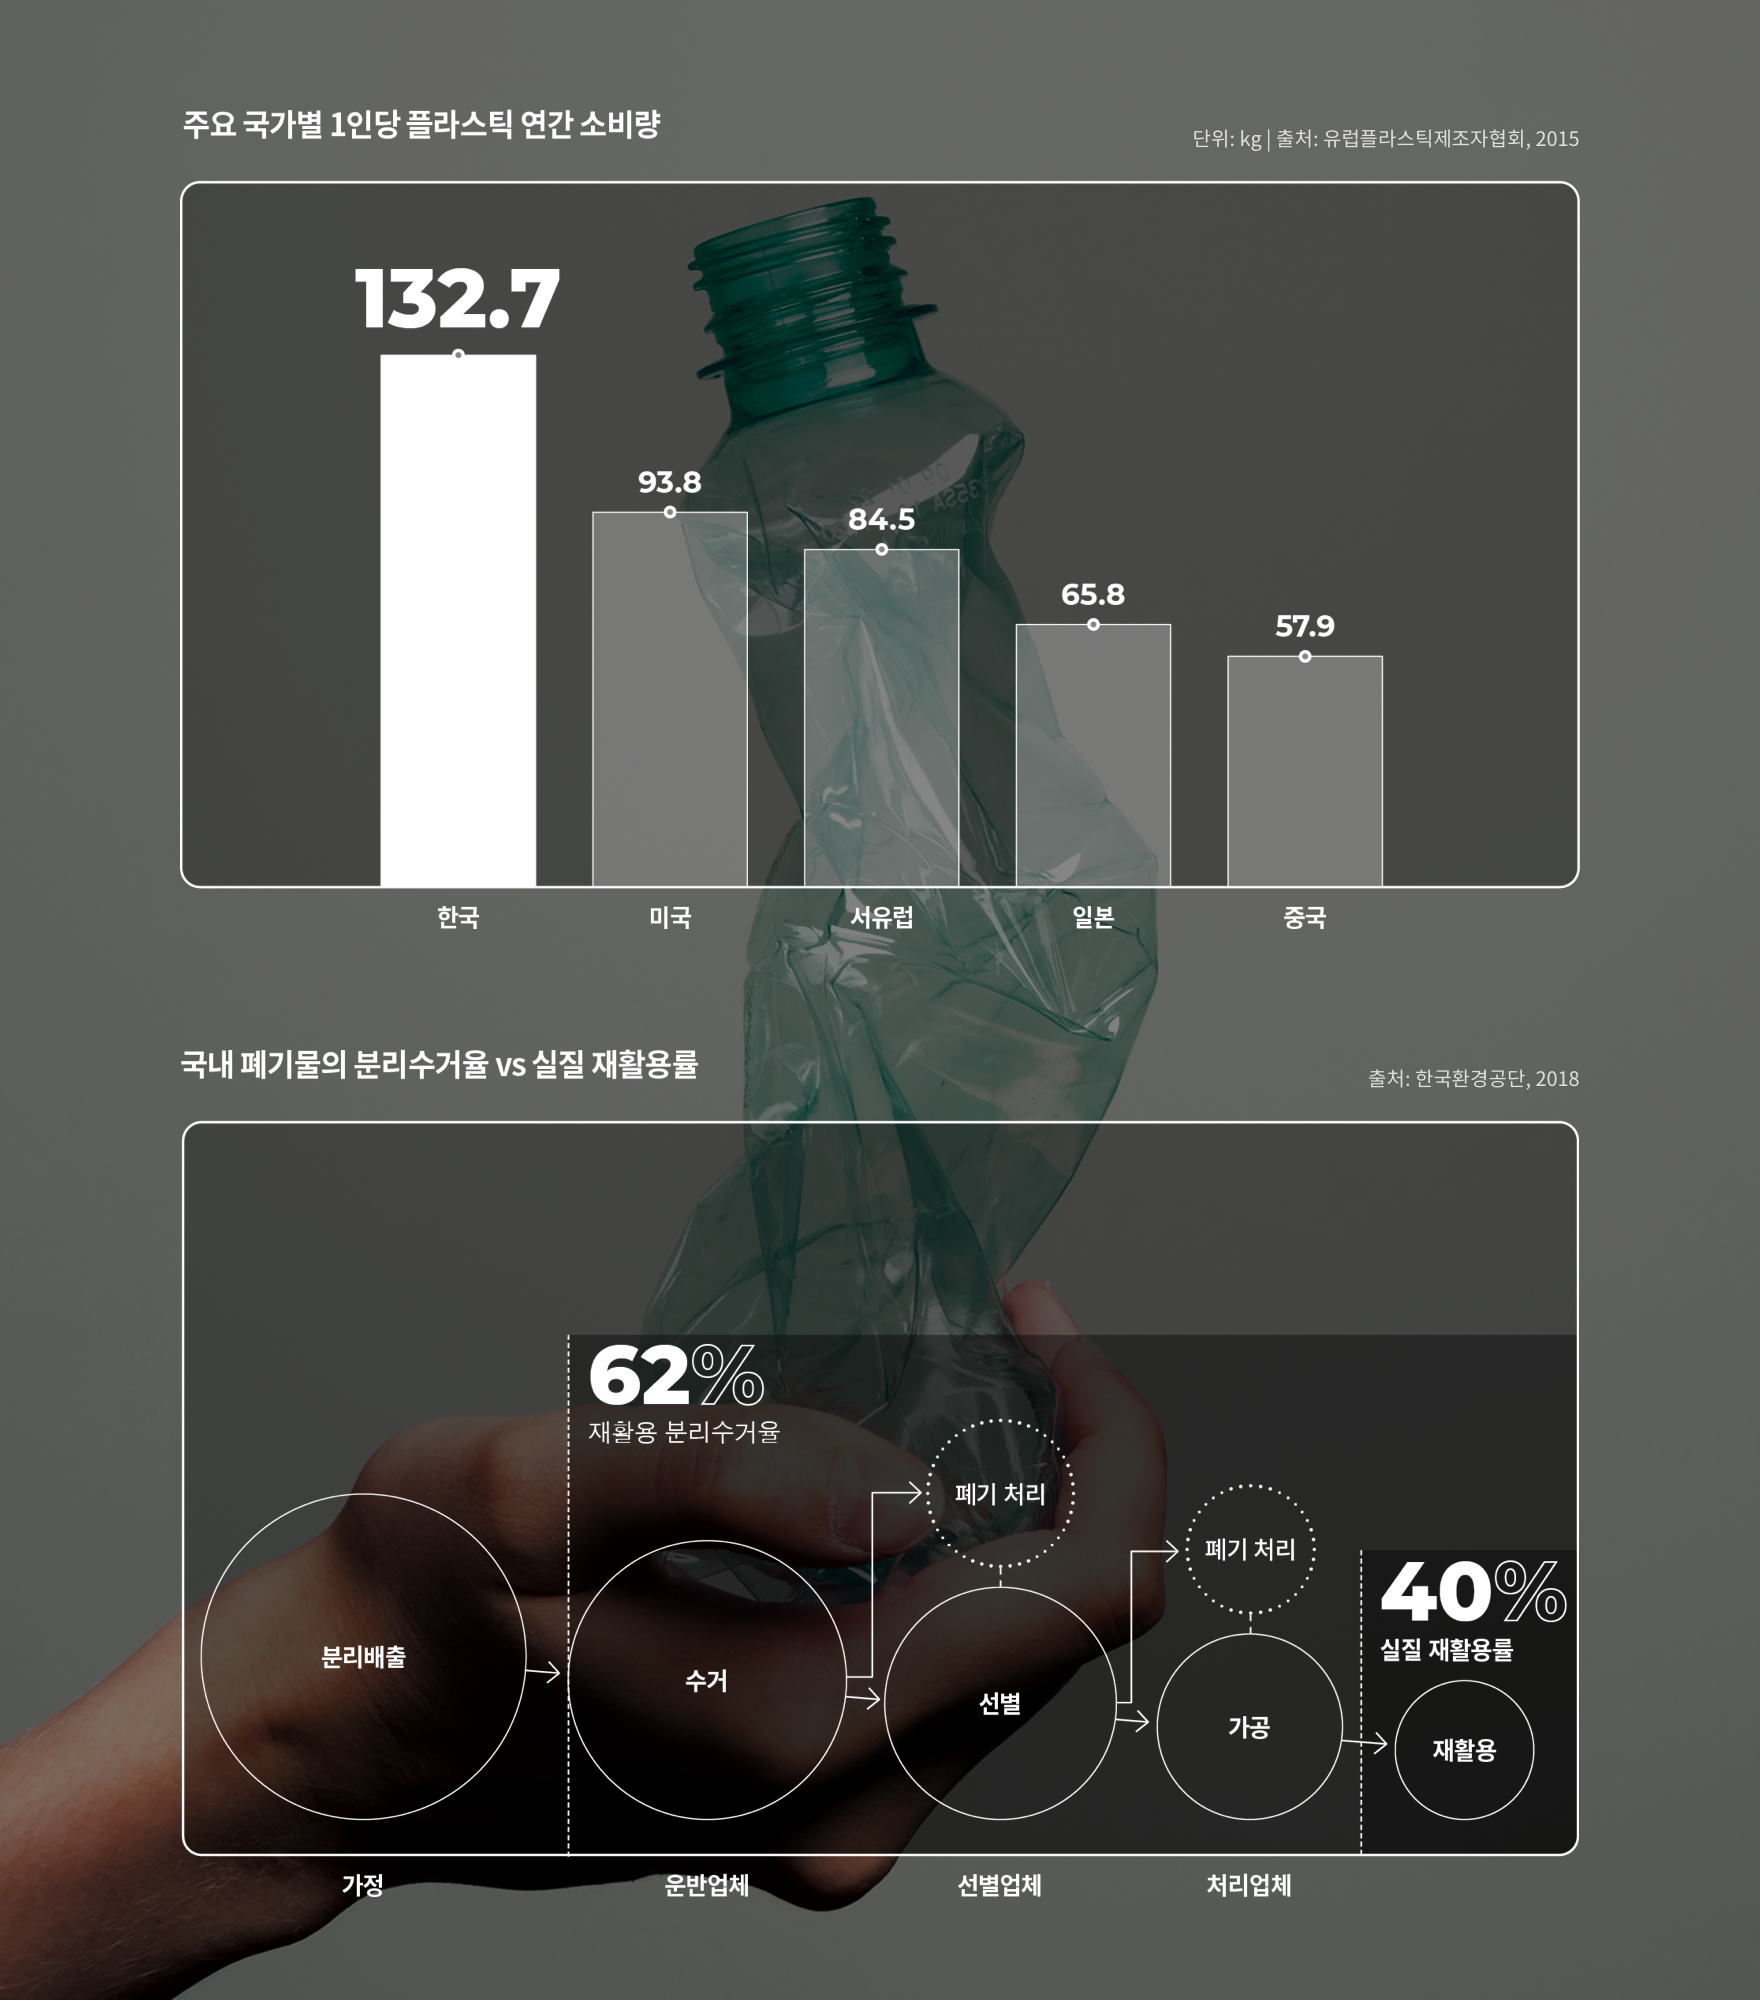 주요 국가별 1인당 플라스틱 연간 소비량 (단위:kg, 출처: 유럽플라스틱제조자협회,2015) - 한국 132.7, 미국 93.8, 서유럽 84.5, 일본 65.8, 중국 57.9, 국내 폐기물의 분리수거율 vs 실질 재활용률 (출처: 한국환경공단,2018) - 가정(분리배출), 운반업체(수거 -> 폐기처리, 재활용 분리수거율 62%), 선별업체(선별 -> 폐기처리), 처리업체(가공 -> 폐기처리), 재활용(실질 재활용률 40%)